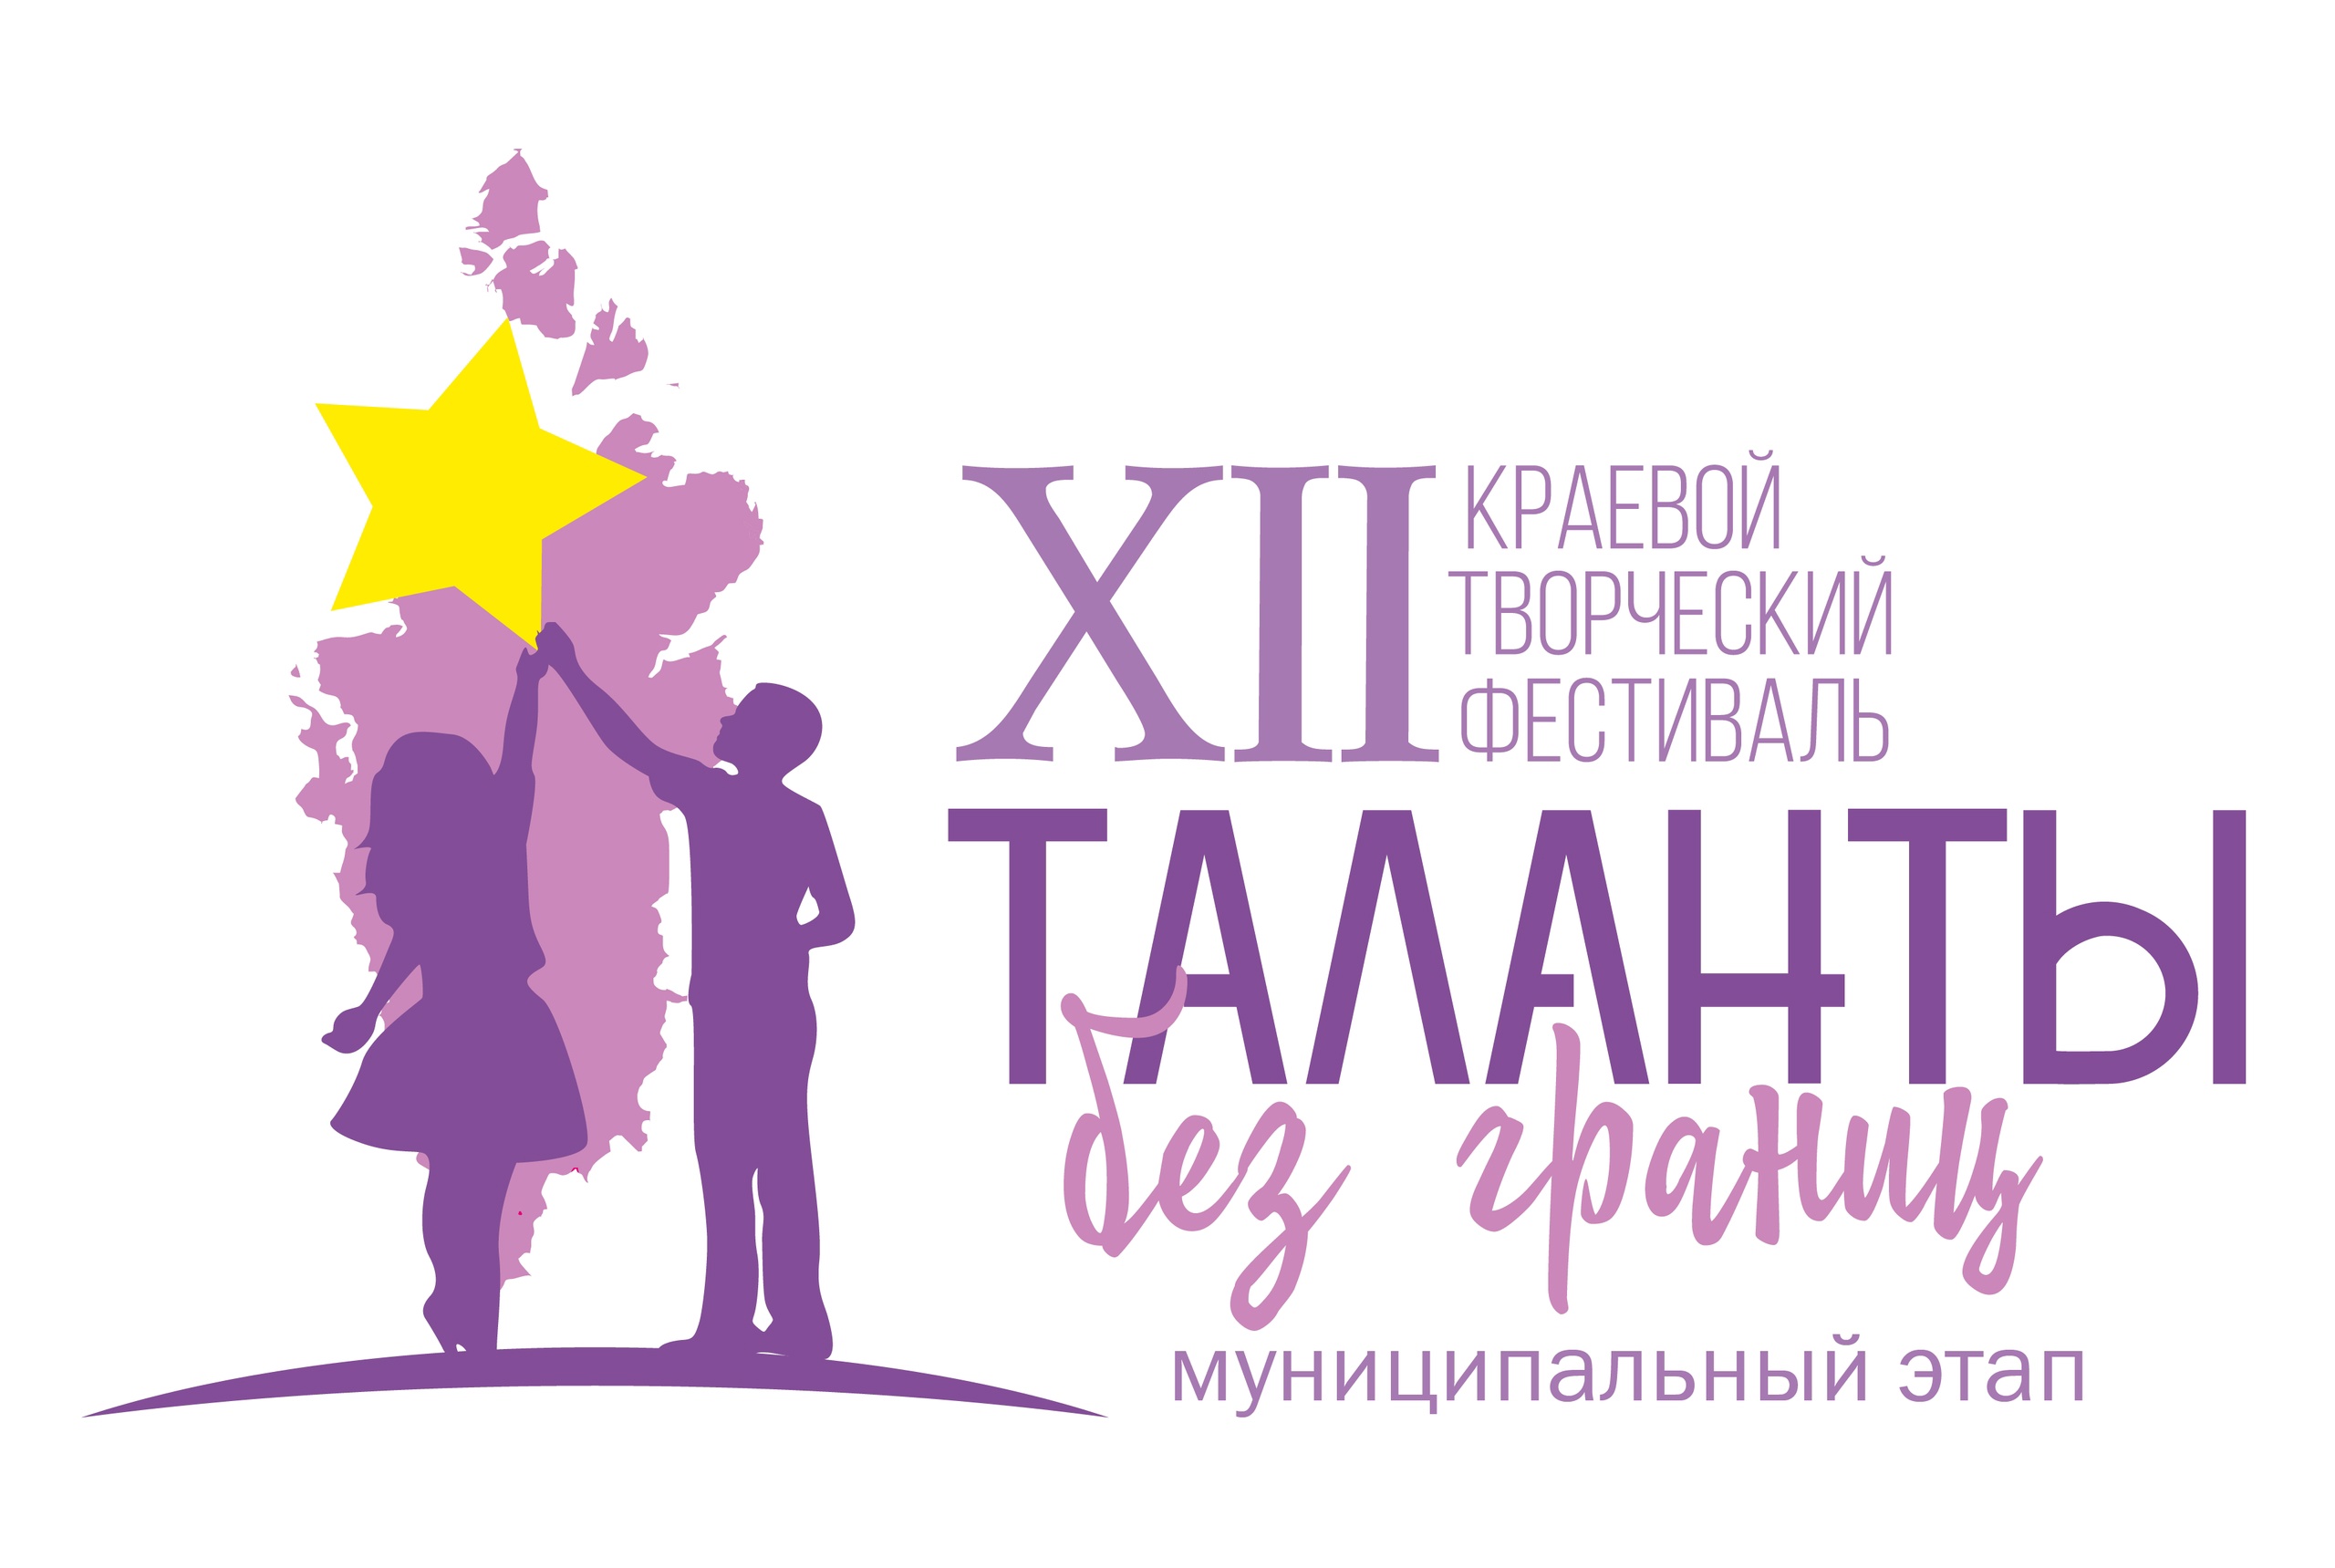 Муниципальный этап XII краевого творческого фестиваля «Таланты без границ»: участие школы.